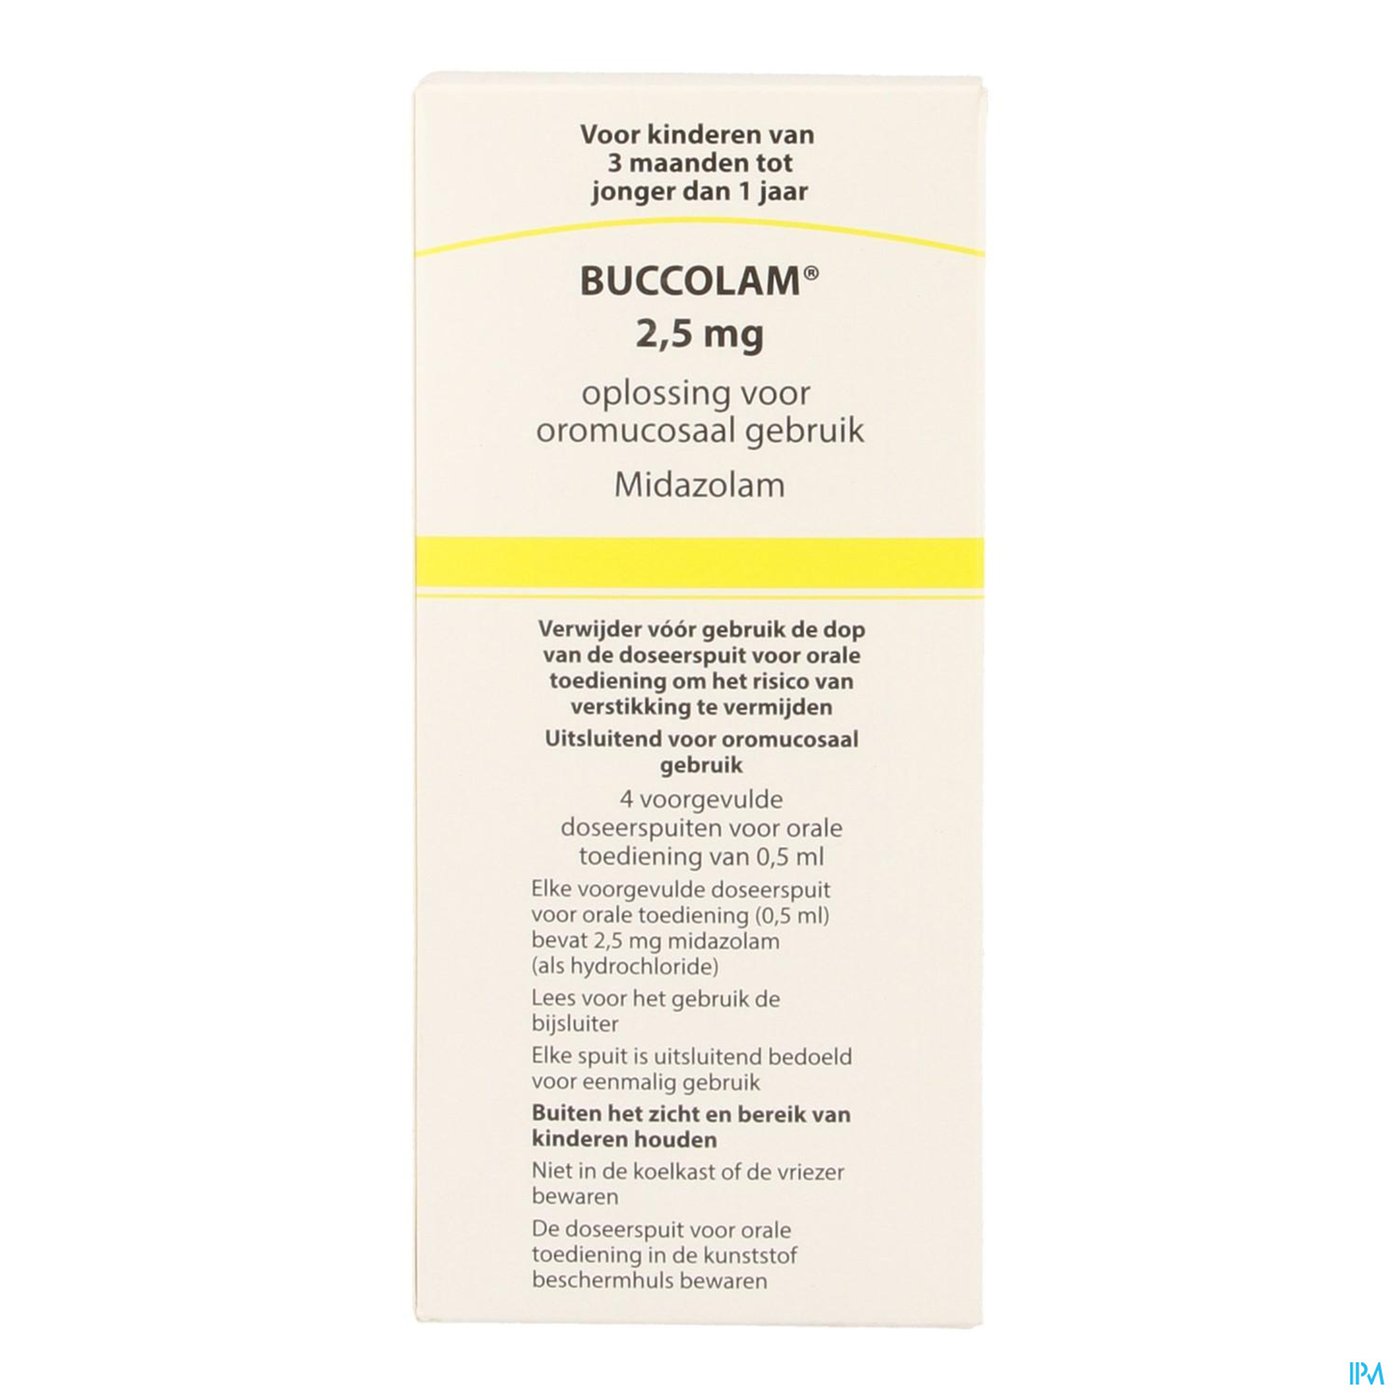 Buccolam 2,5mg Or Opl 4 Voorgev Dos Spuit 0,5ml packshot